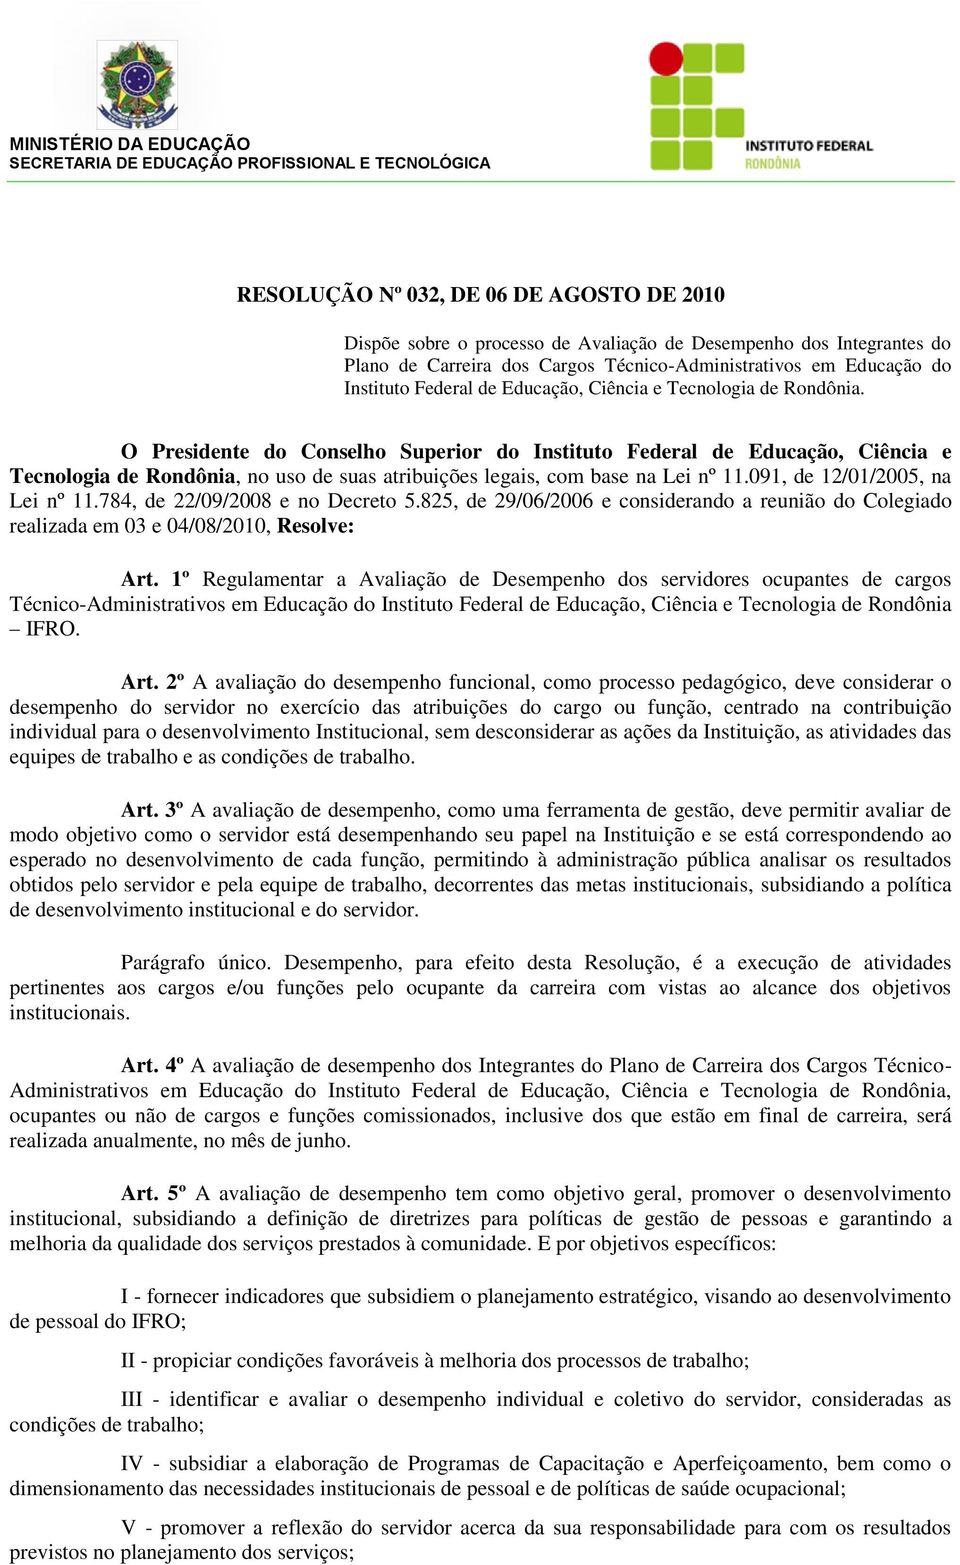 O Presidente do Conselho Superior do Instituto Federal de Educação, Ciência e Tecnologia de Rondônia, no uso de suas atribuições legais, com base na Lei nº 11.091, de 12/01/2005, na Lei nº 11.